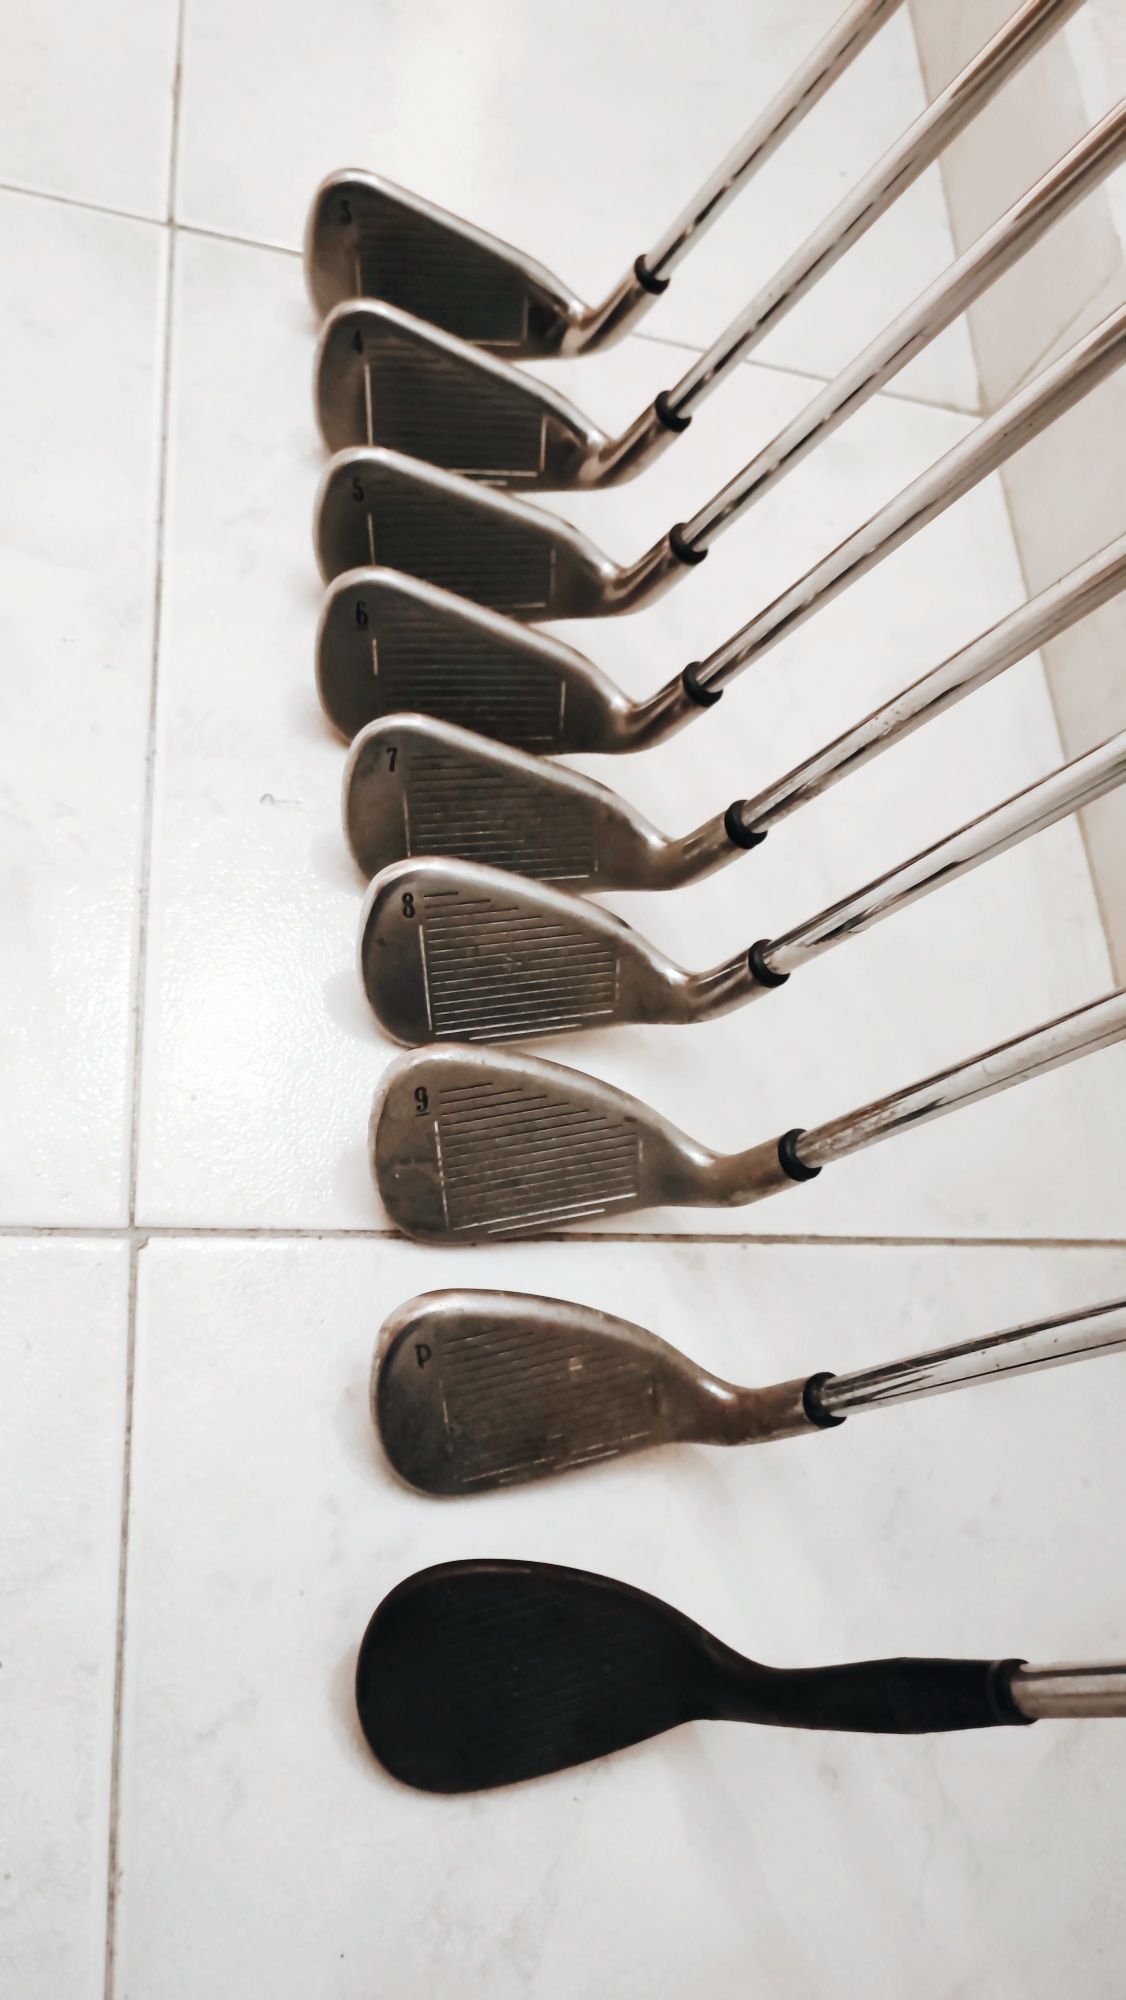 Conjunto de 9 tacos de golf Callaway